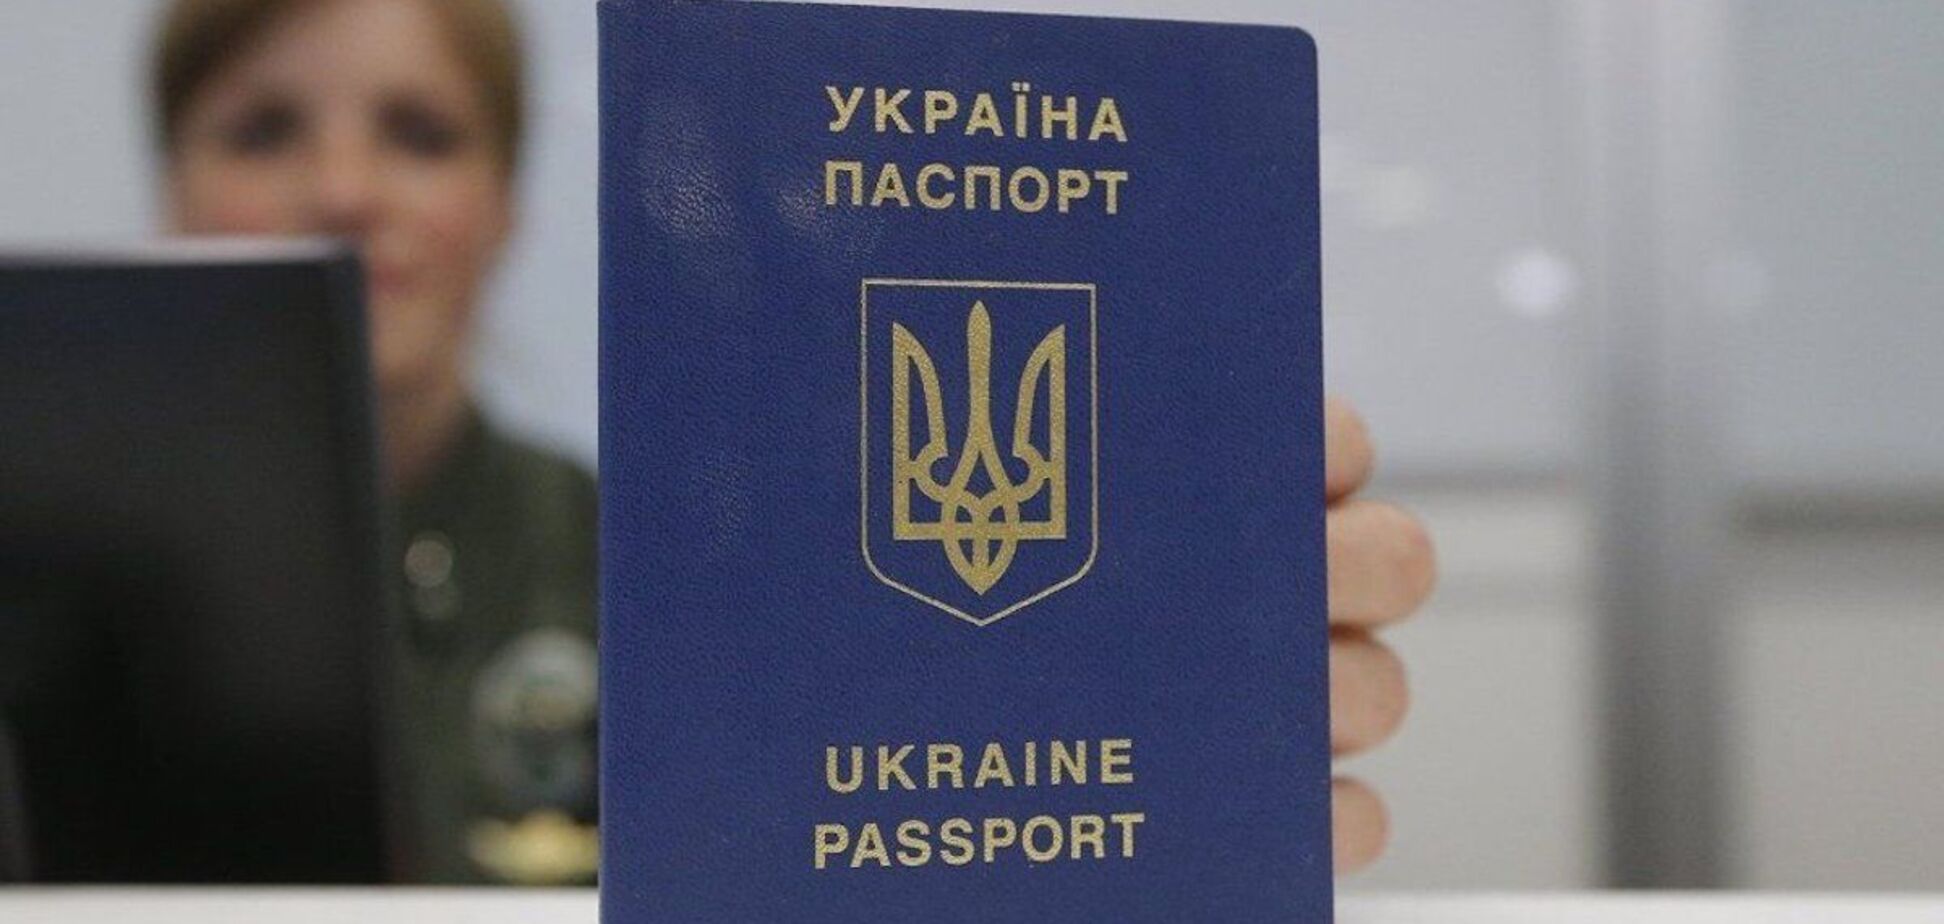 В Украине на 5 лет продлили действие загранпаспортов: также в них начнут вносить фото детей и их данные